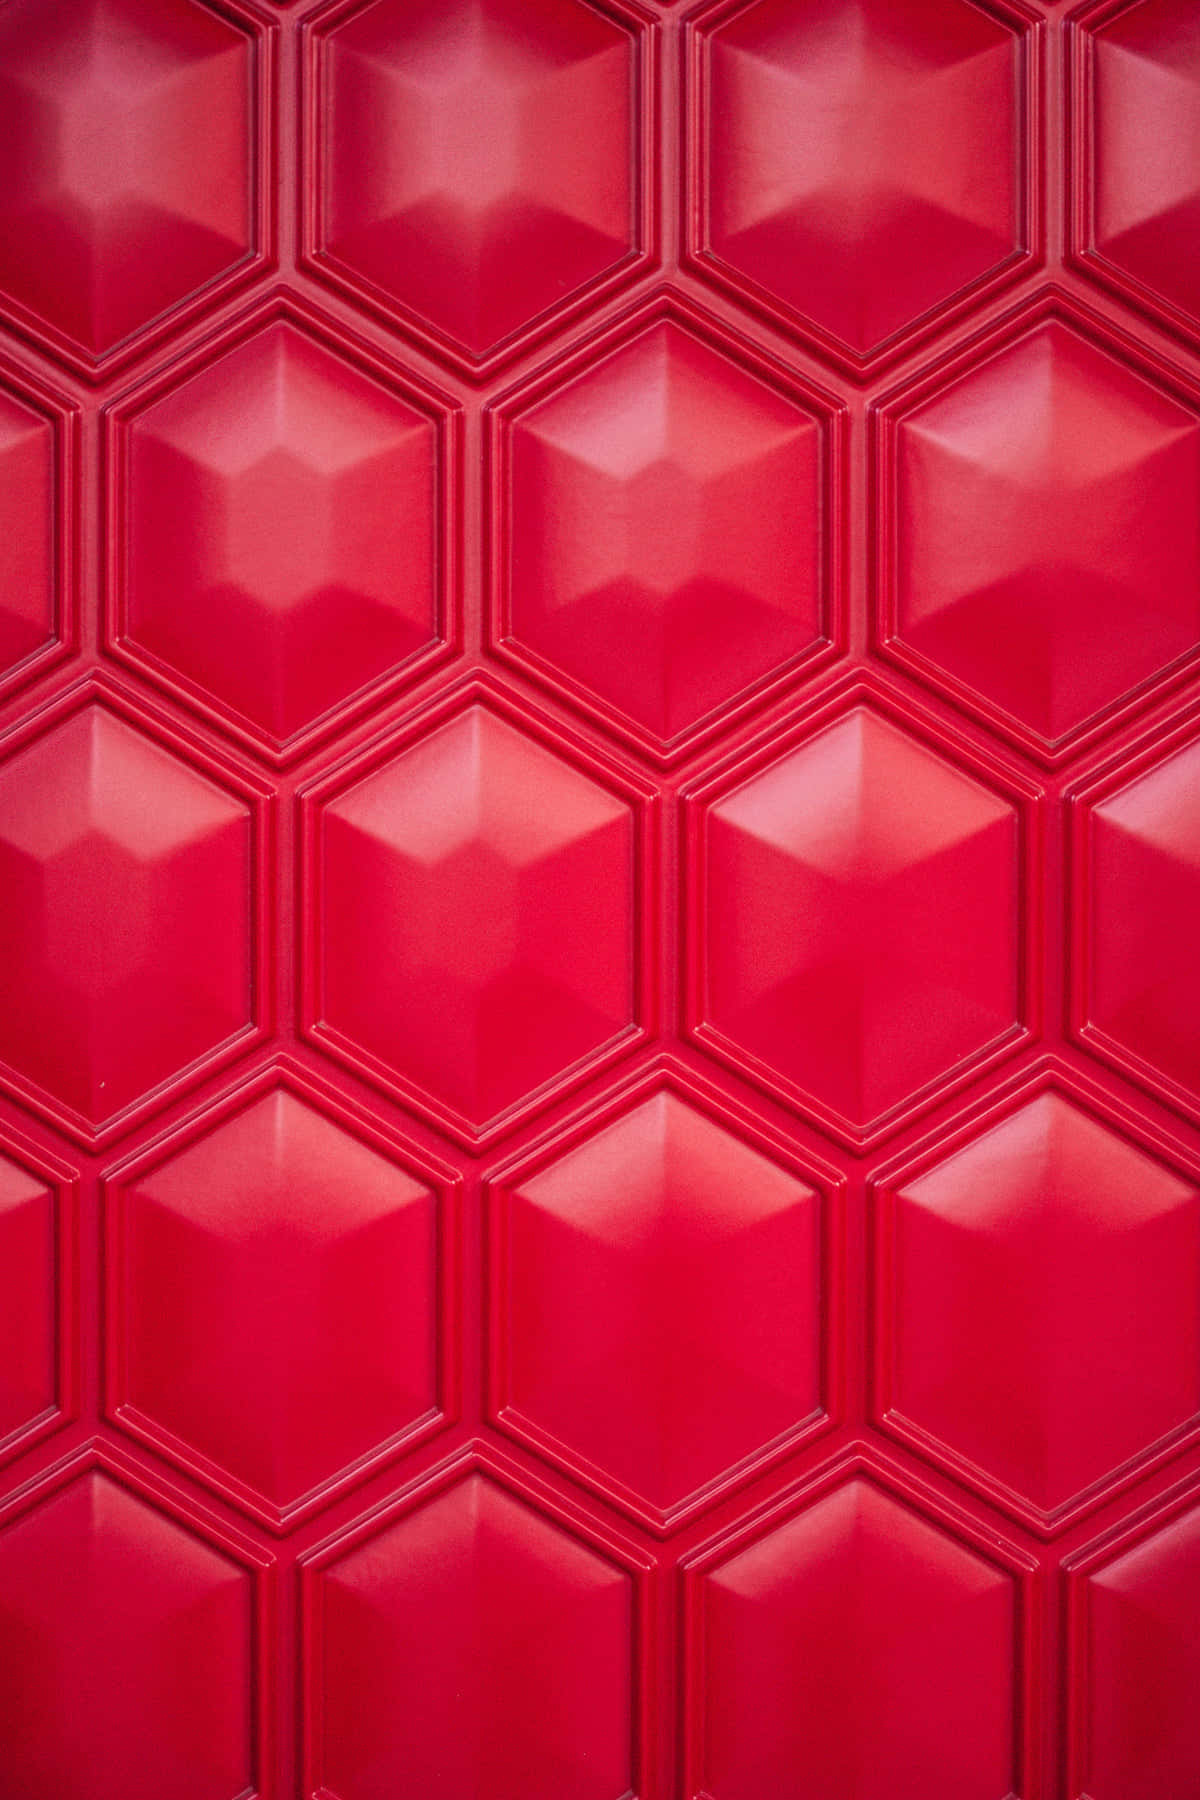 Red Hexagonal Tile Background Wallpaper